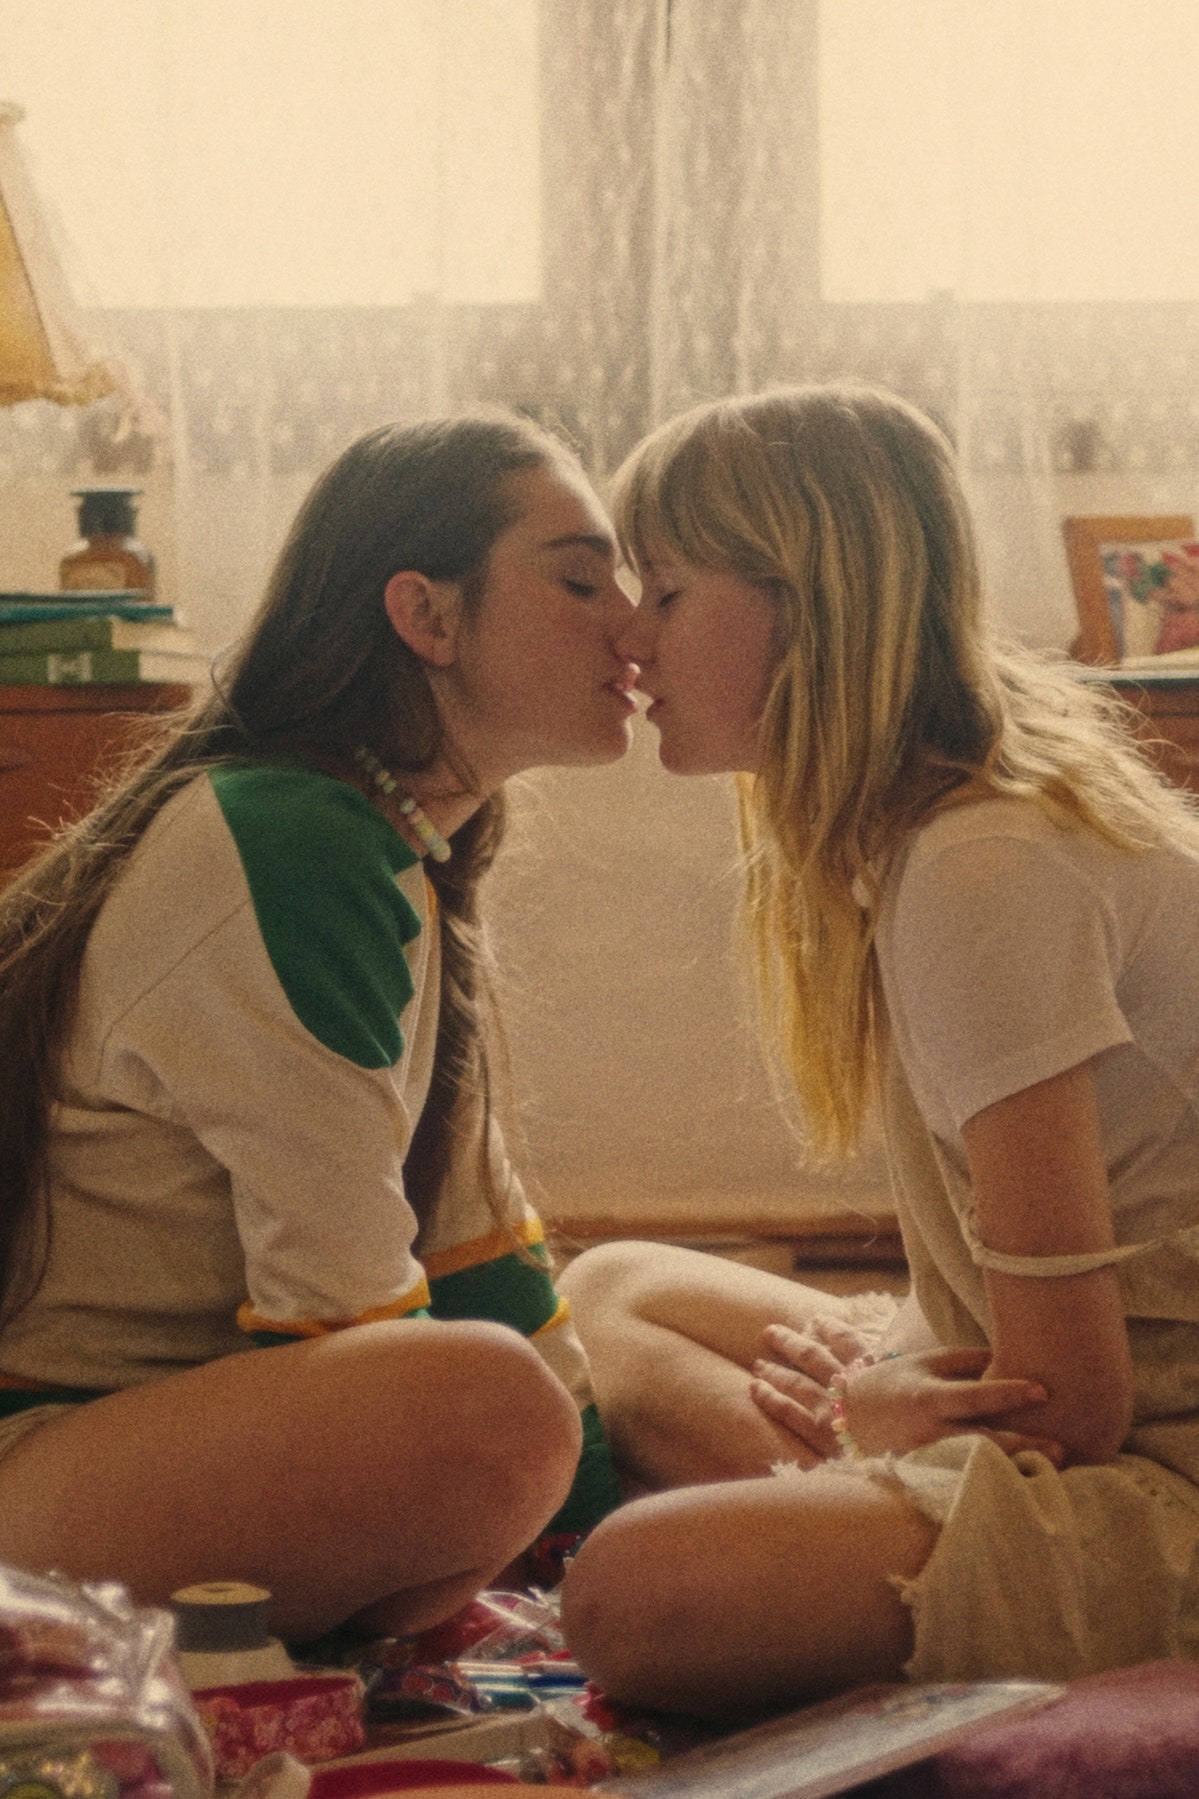 ЛГБТК: 8 новых квир-фильмов, которые стоит посмотреть в эти выходные |  Vogue Russia